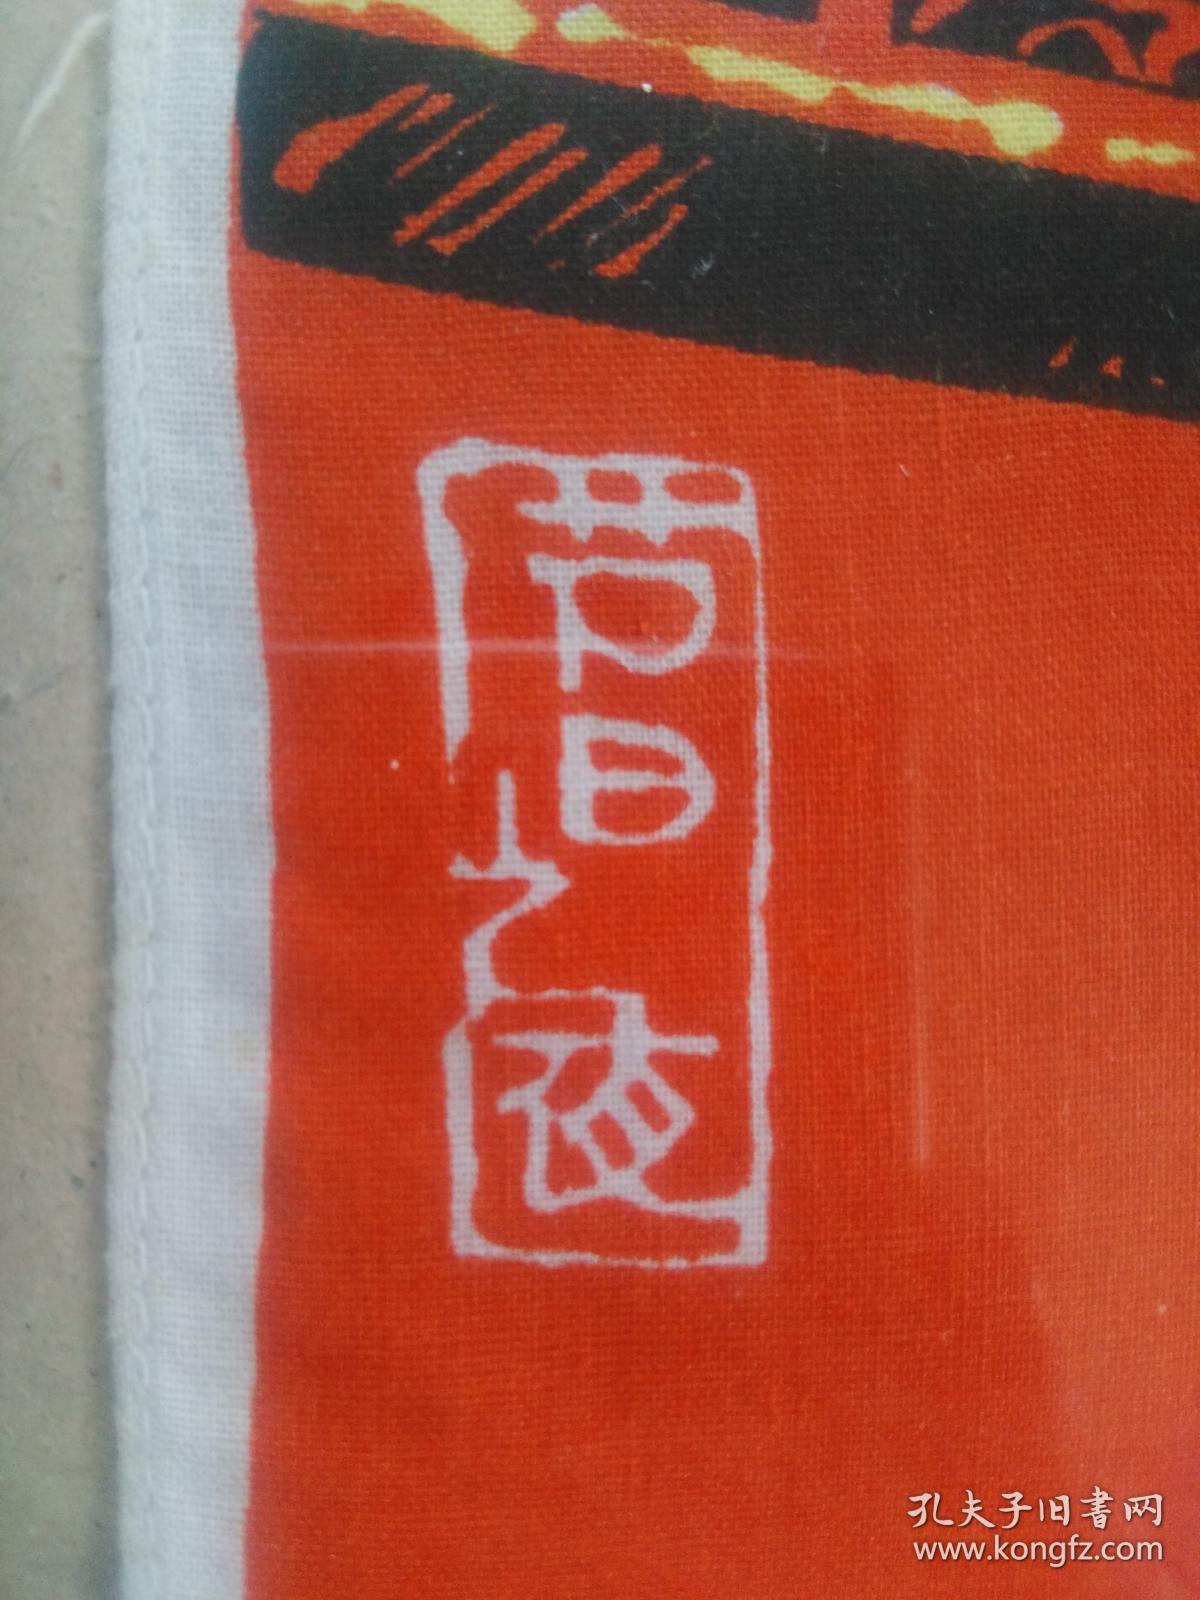 手帕稿样（出厂前的样品）《节日之夜》七十年代 云南保山专区民族艺术手帕厂高手绘制 馆藏珍品，保真包老